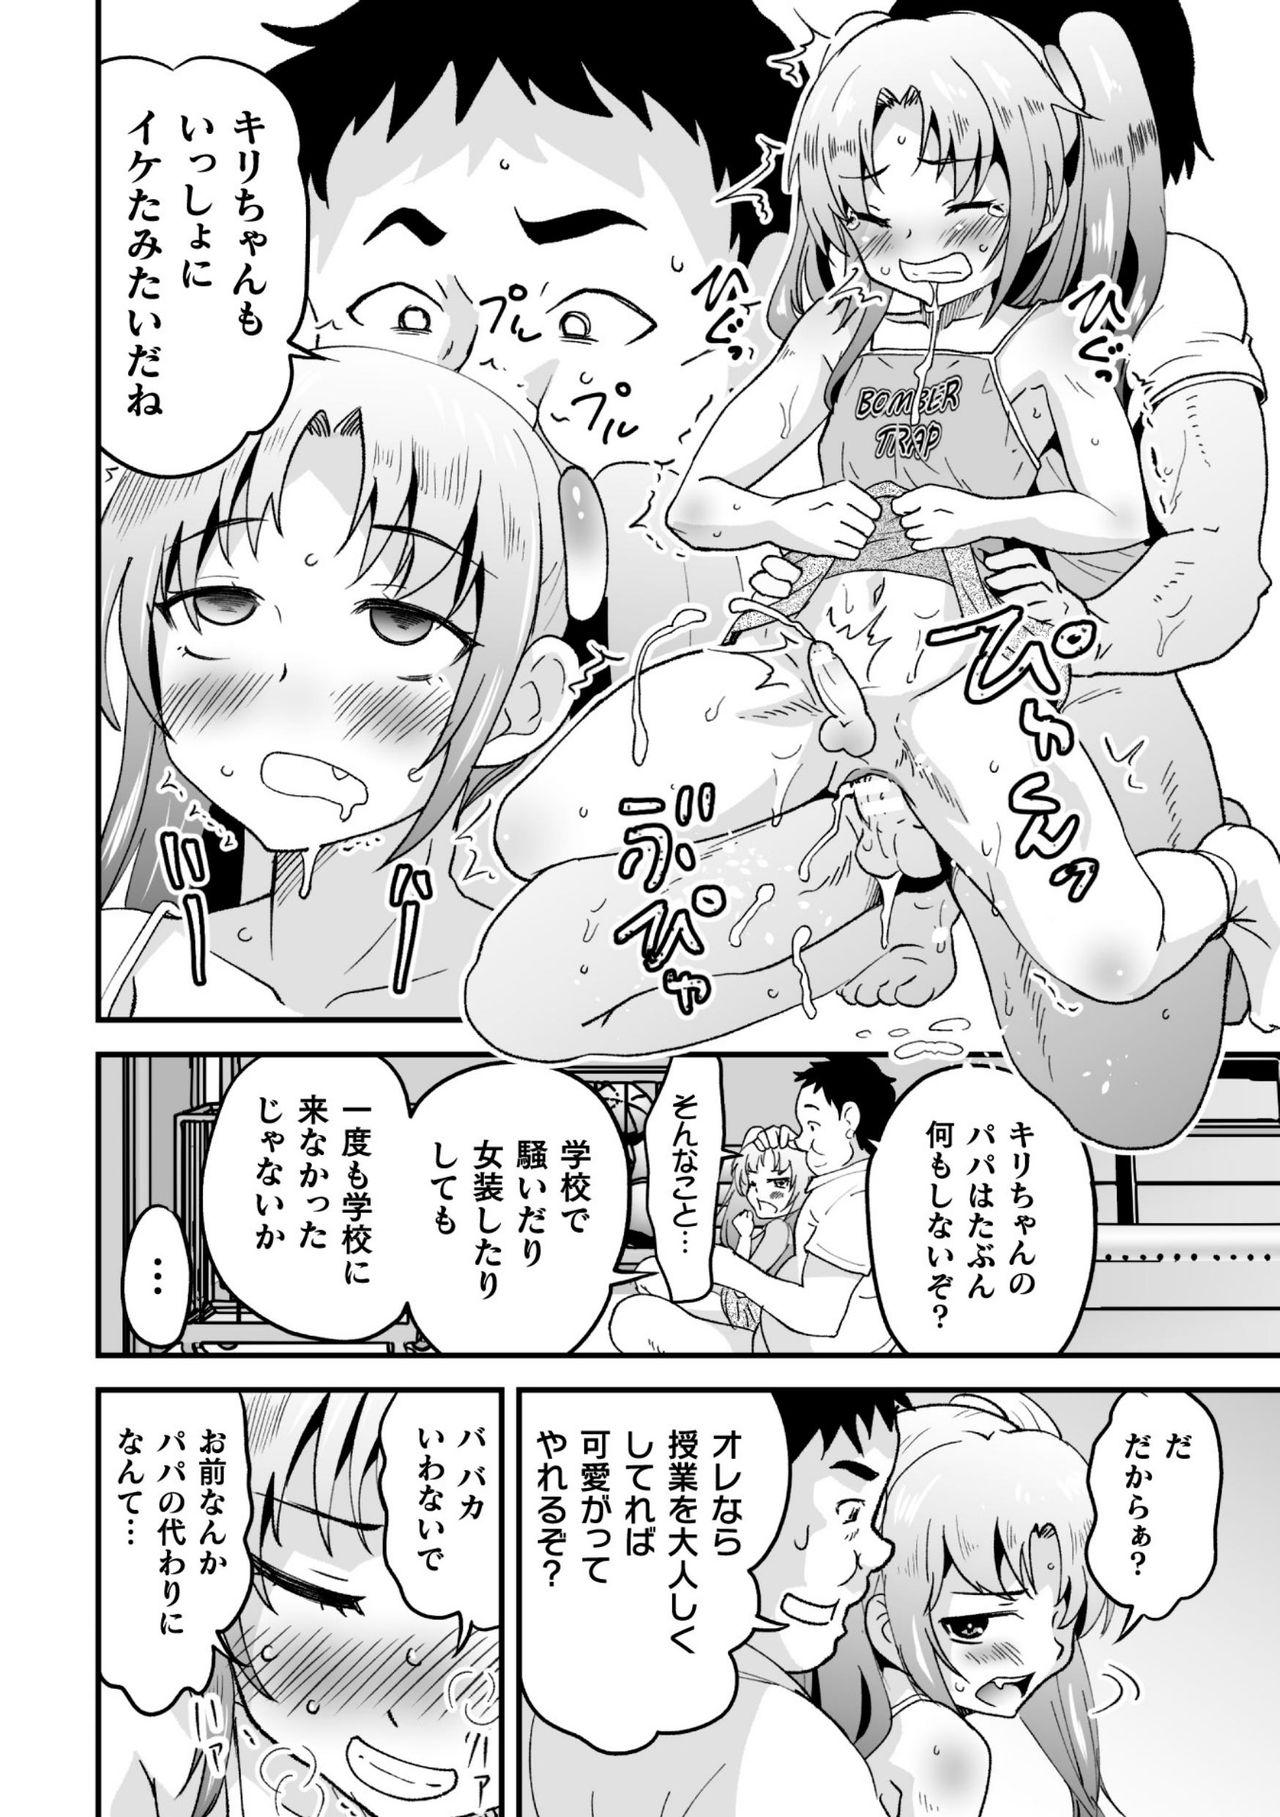 2D Comic Magazine Mesugaki Otokonoko Seisai Ikiru Shiriana o Wakarase Bou de Goshidou Gobentatsu! Vol. 2 57